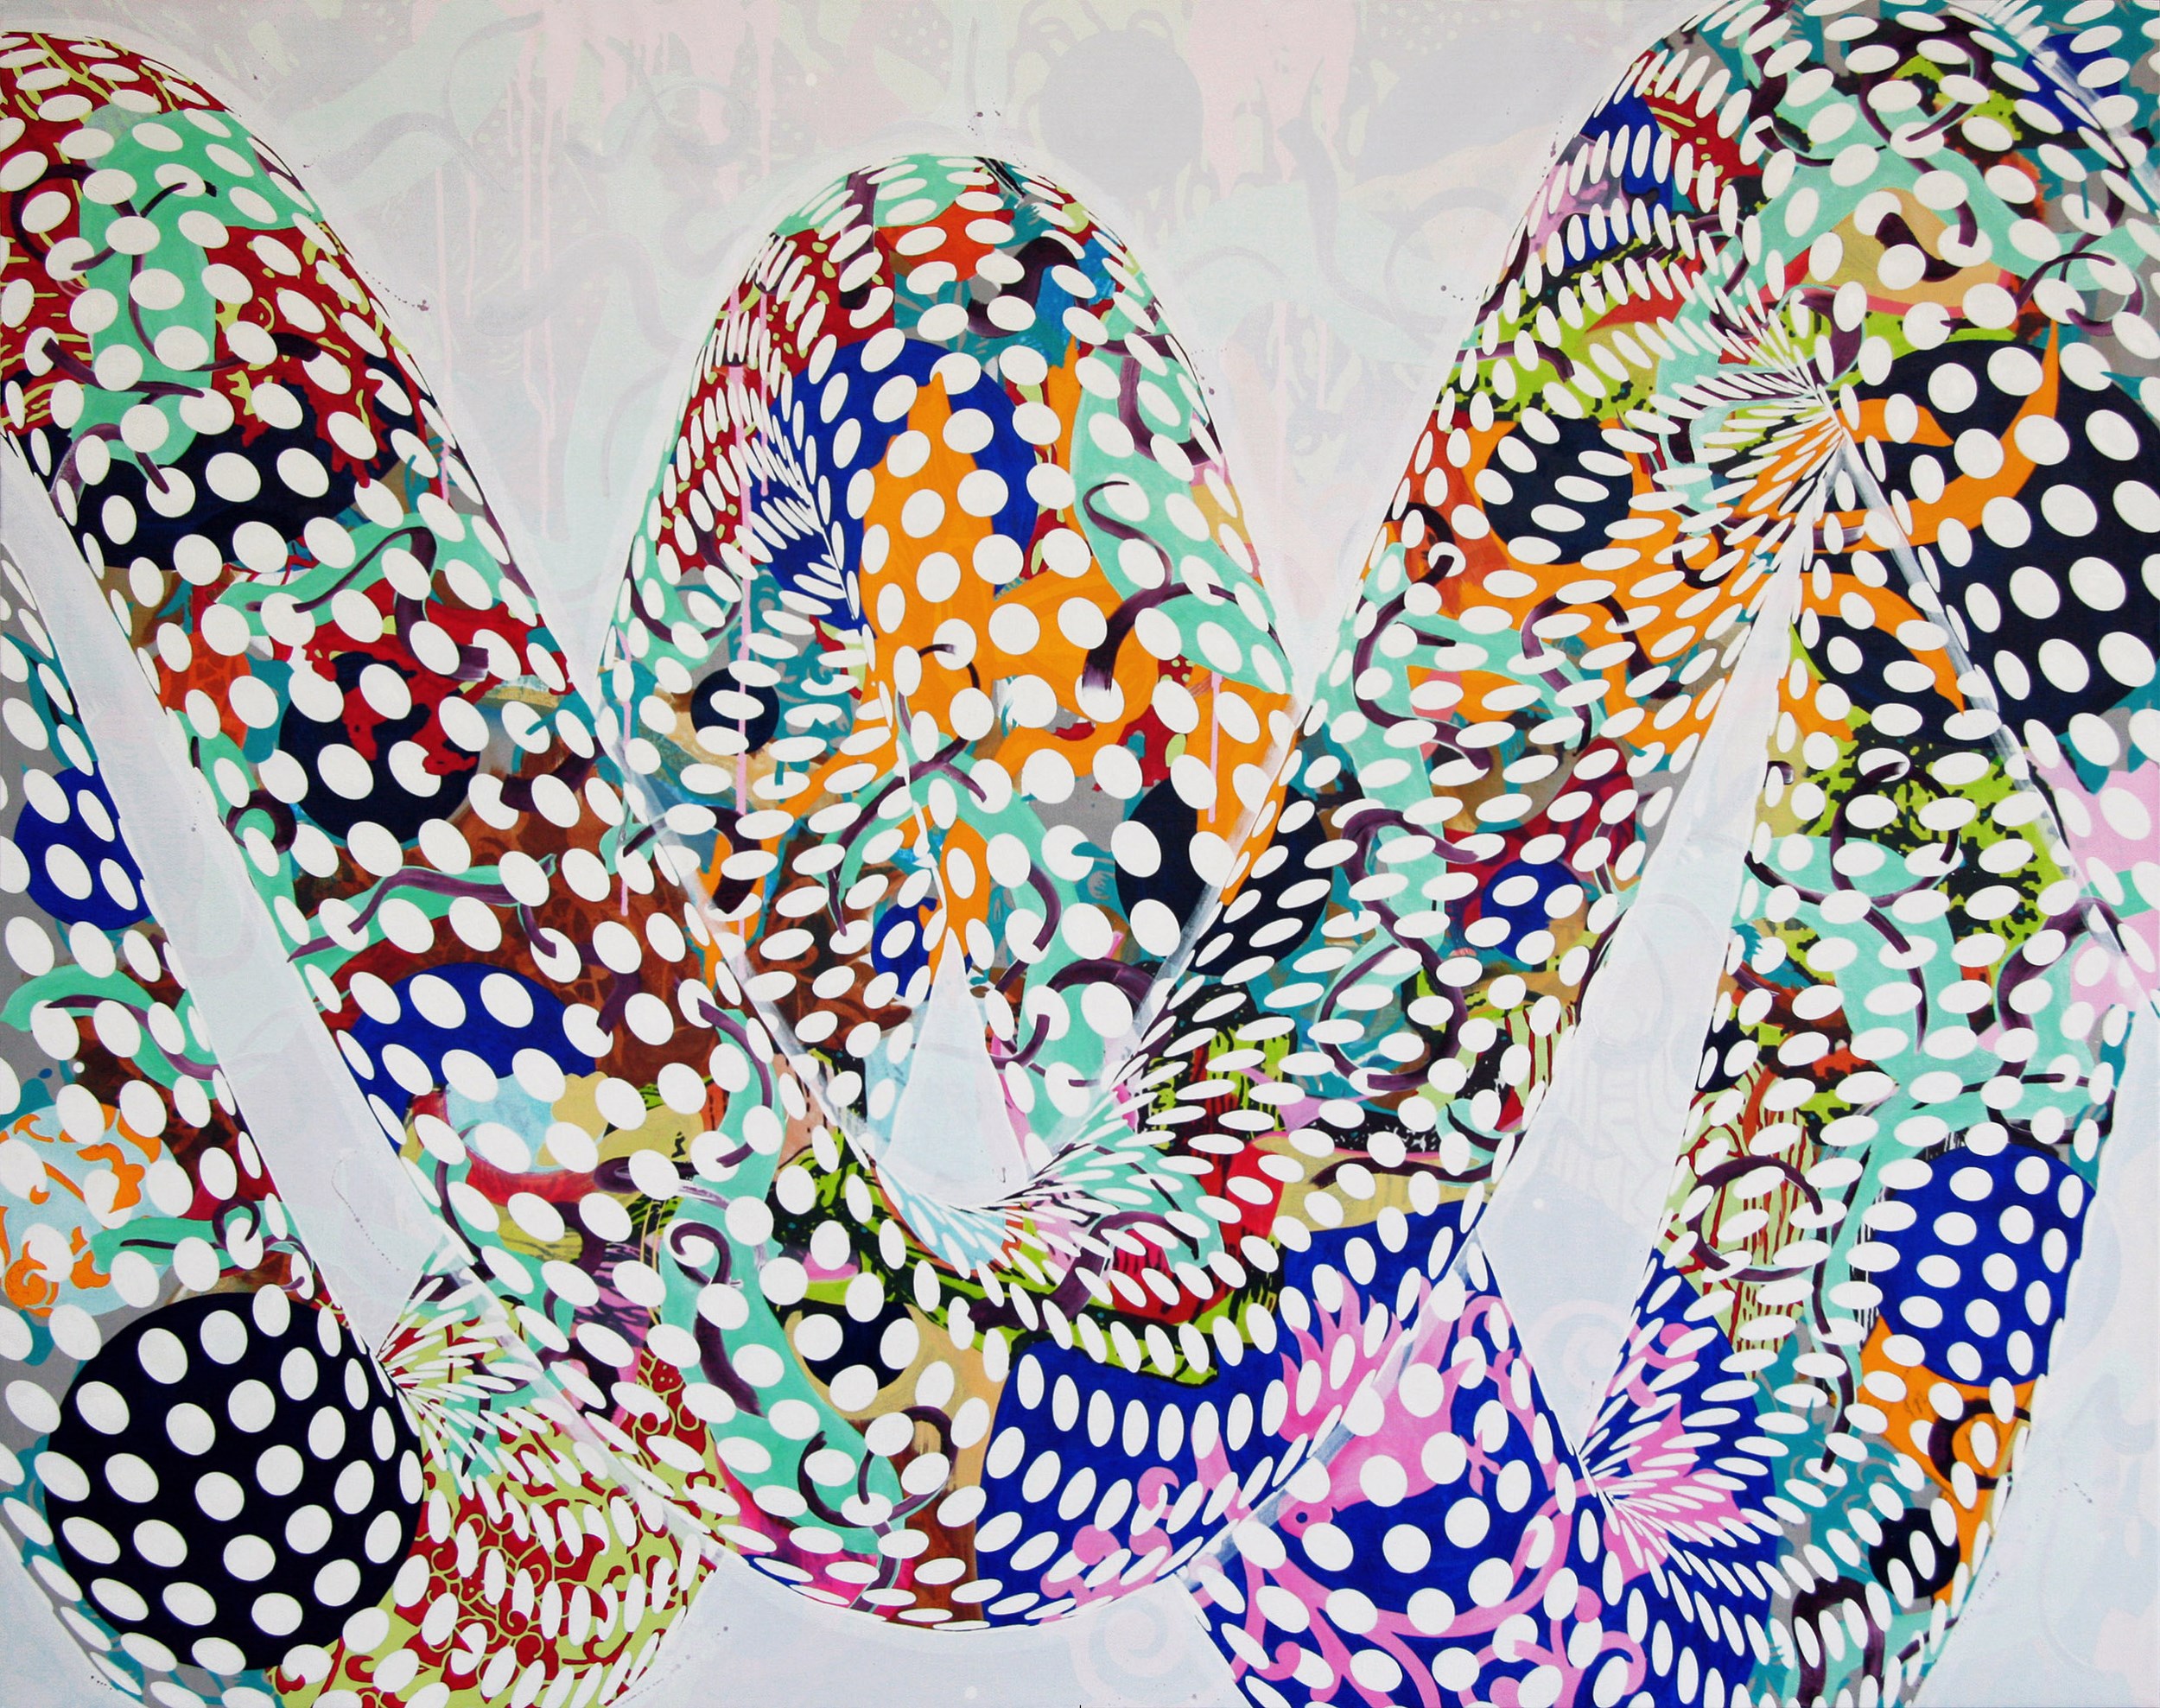 Loop #01, 2012, óleo y acrílico sobre lienzo, 185 x 232 cm.